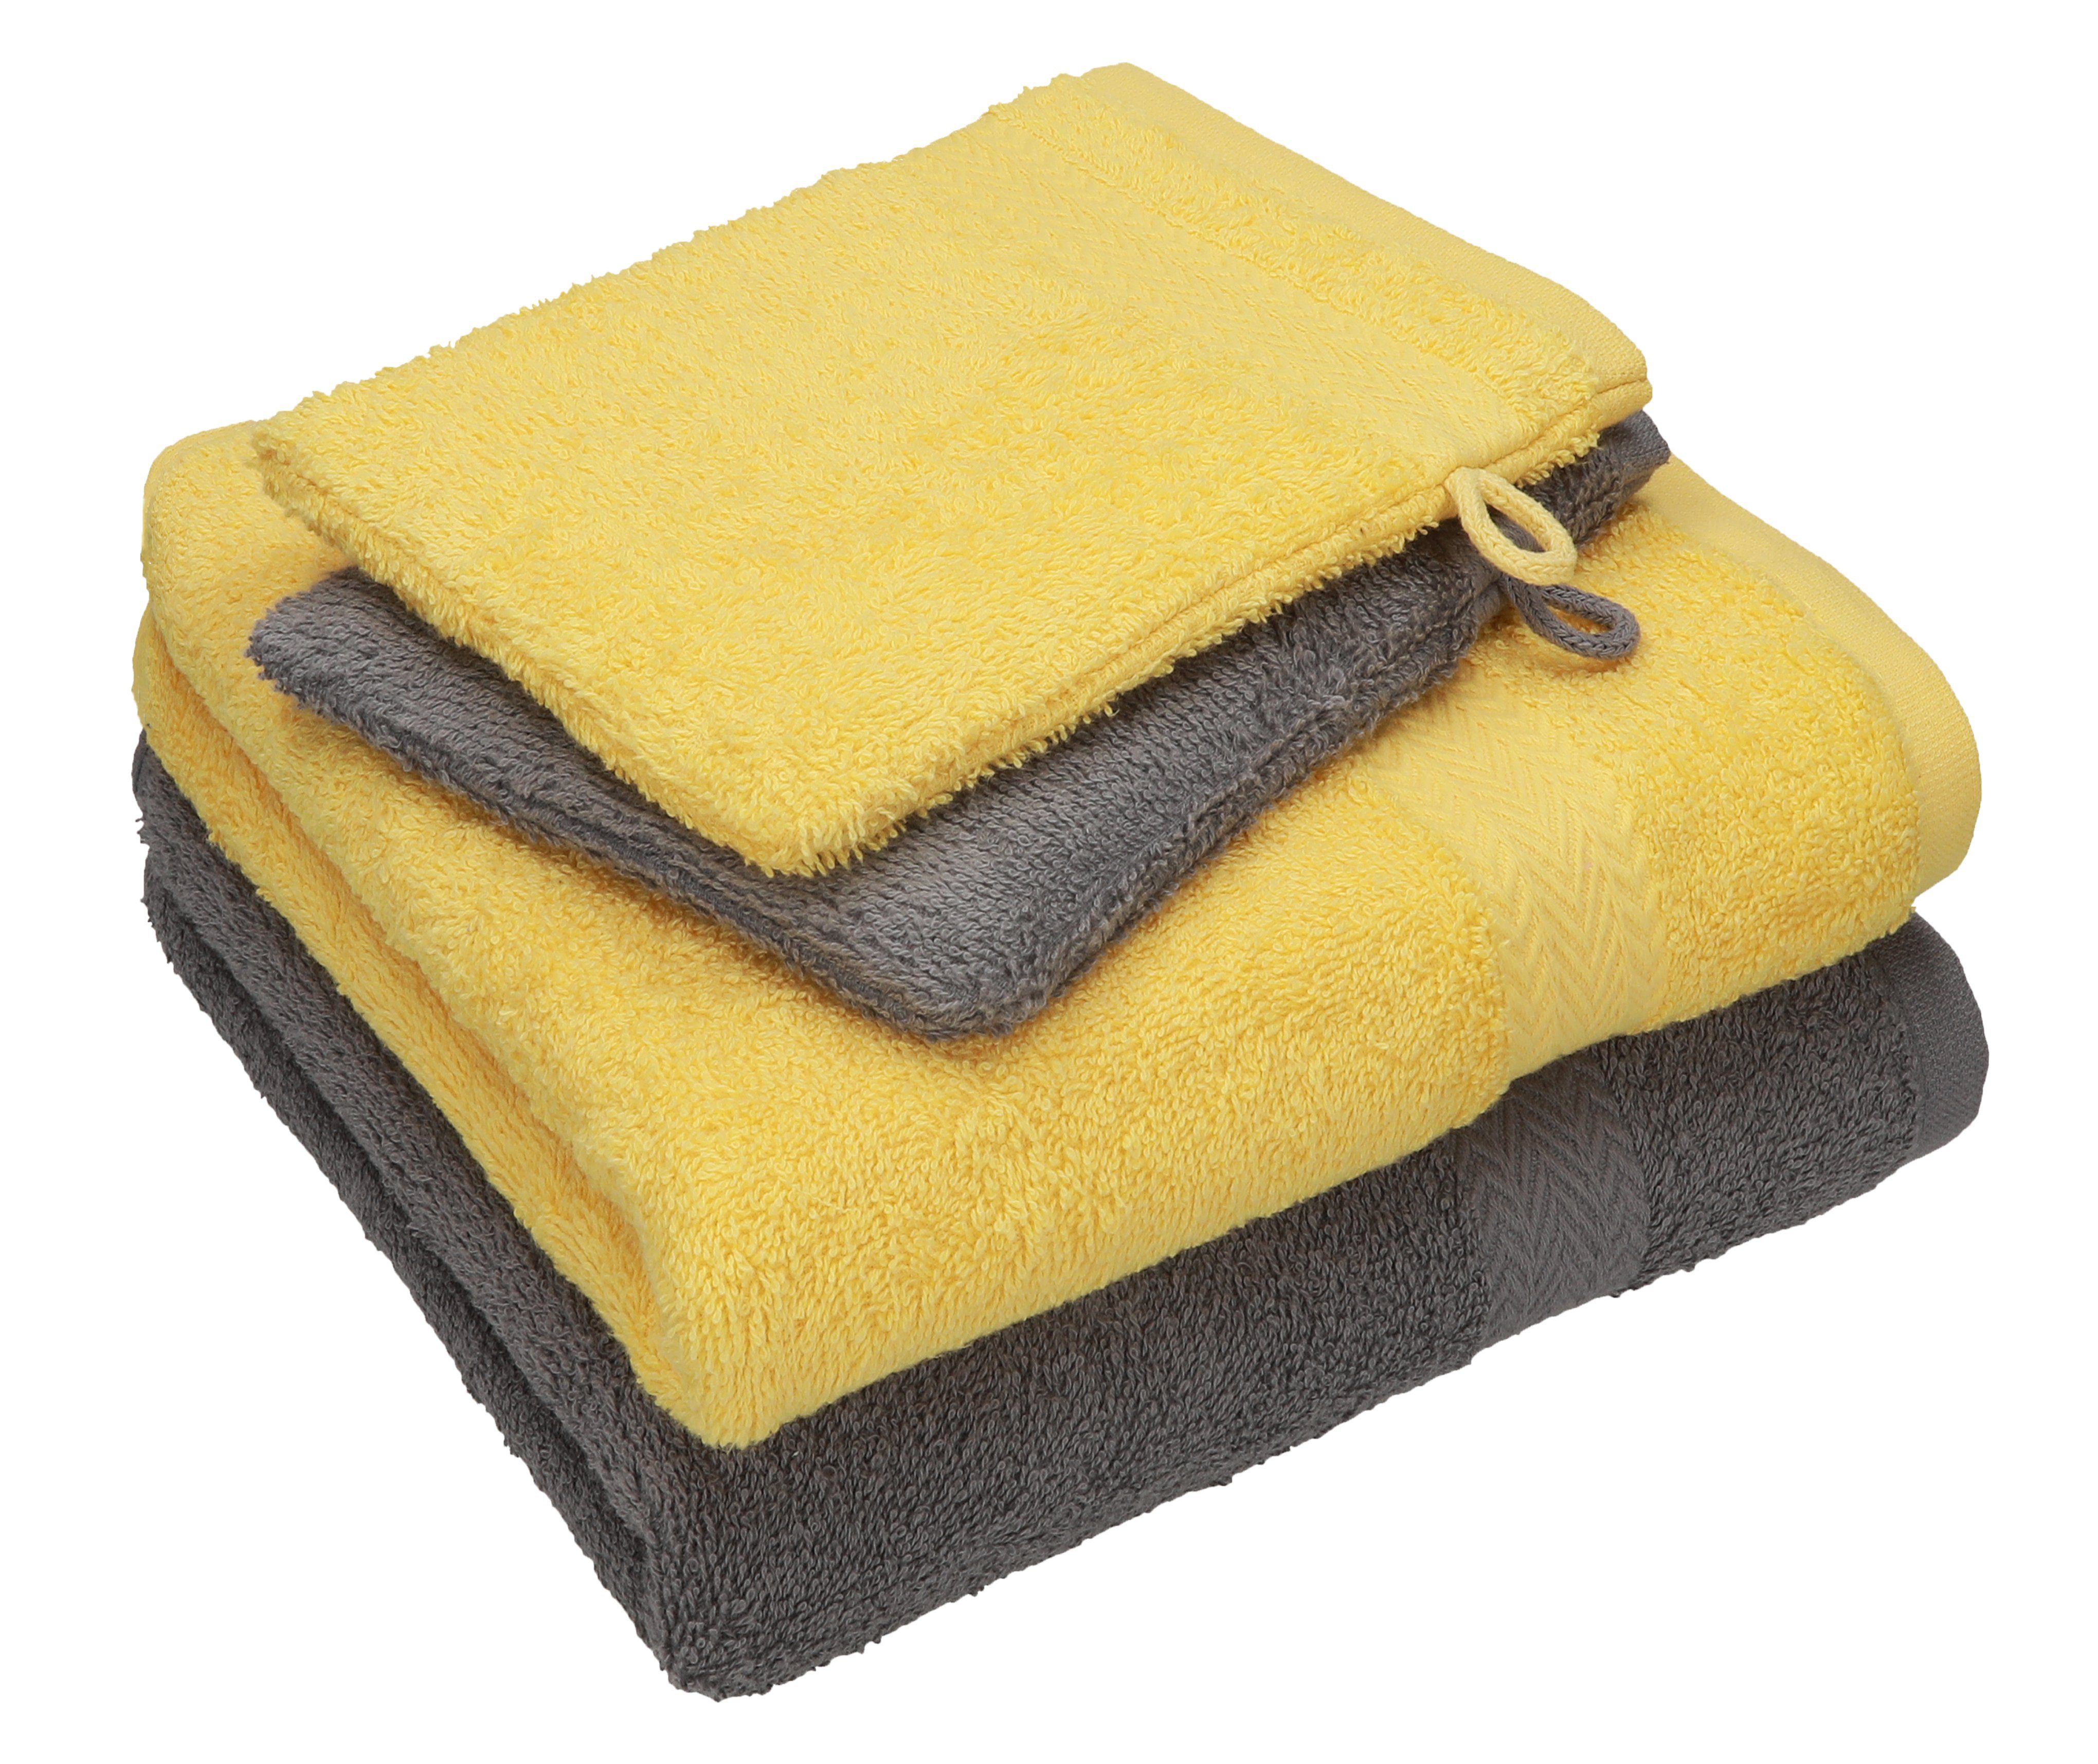 Betz Handtuch Set 4 TLG. Handtuch Set Happy Pack 100% Baumwolle 2 Handtücher 2 Waschhandschuhe, 100% Baumwolle anthrazit grau - gelb